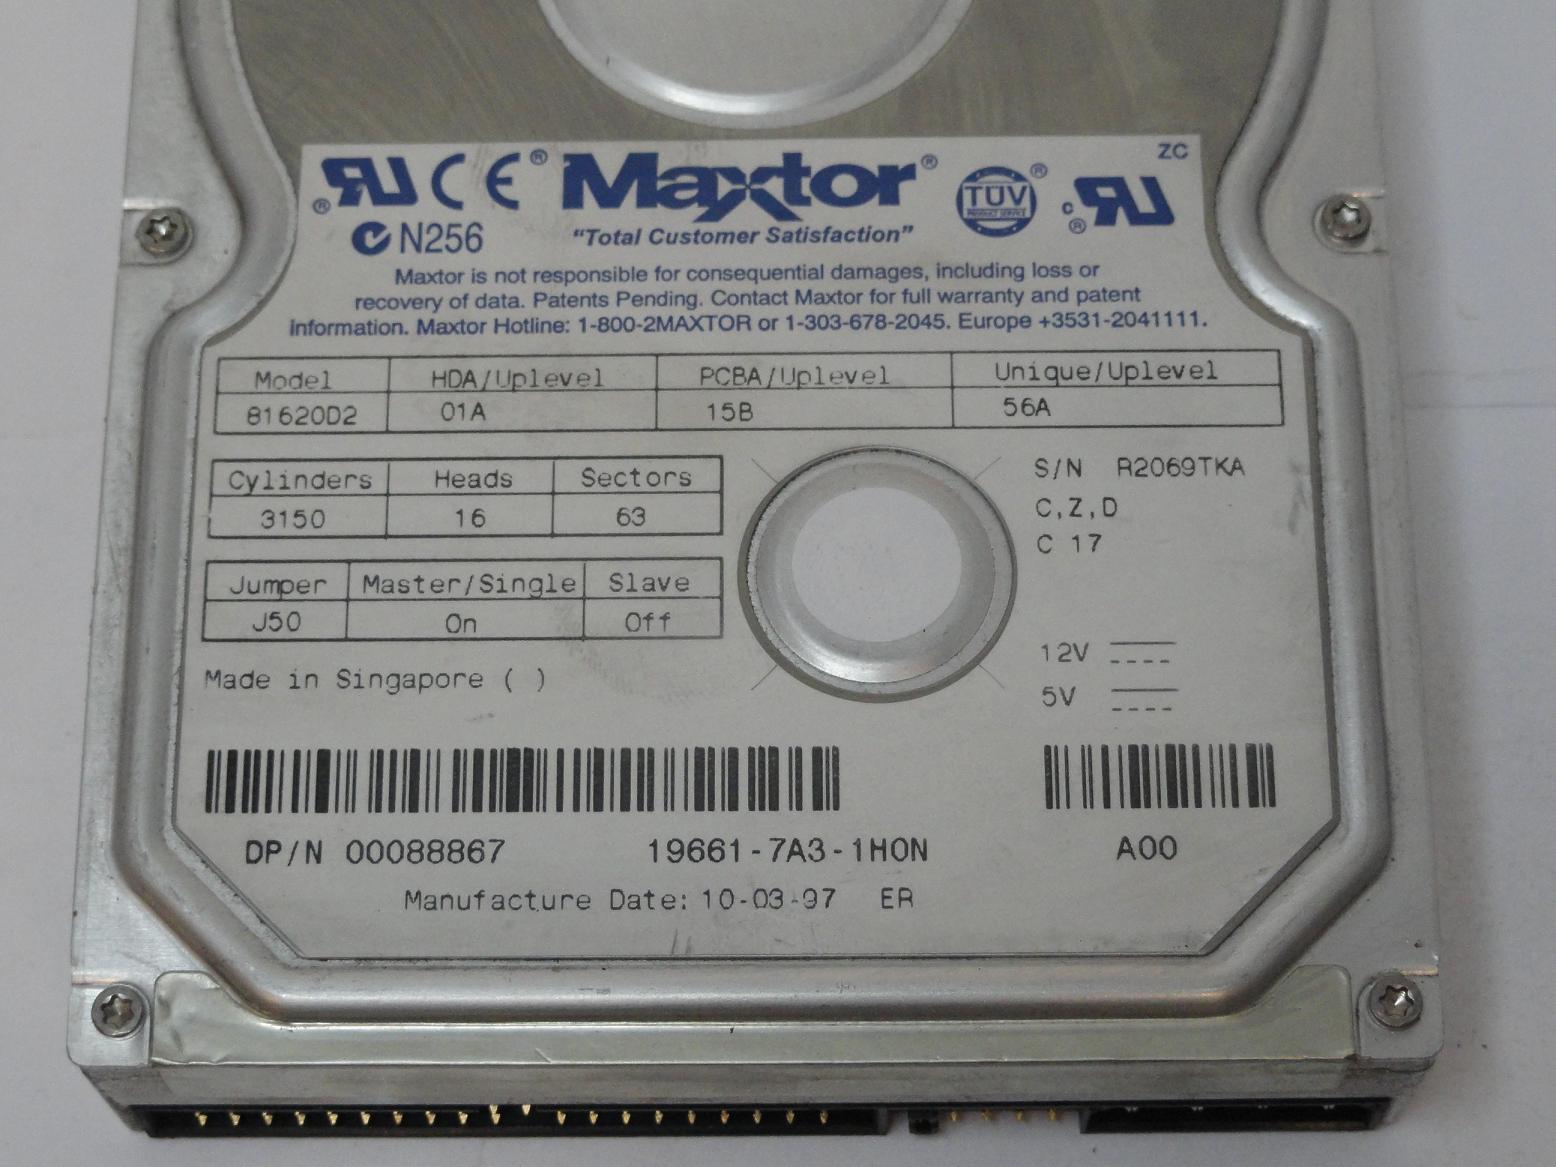 MC1906_81620D2_Maxtor IDE 1.6GB 3.5" HDD - Image3